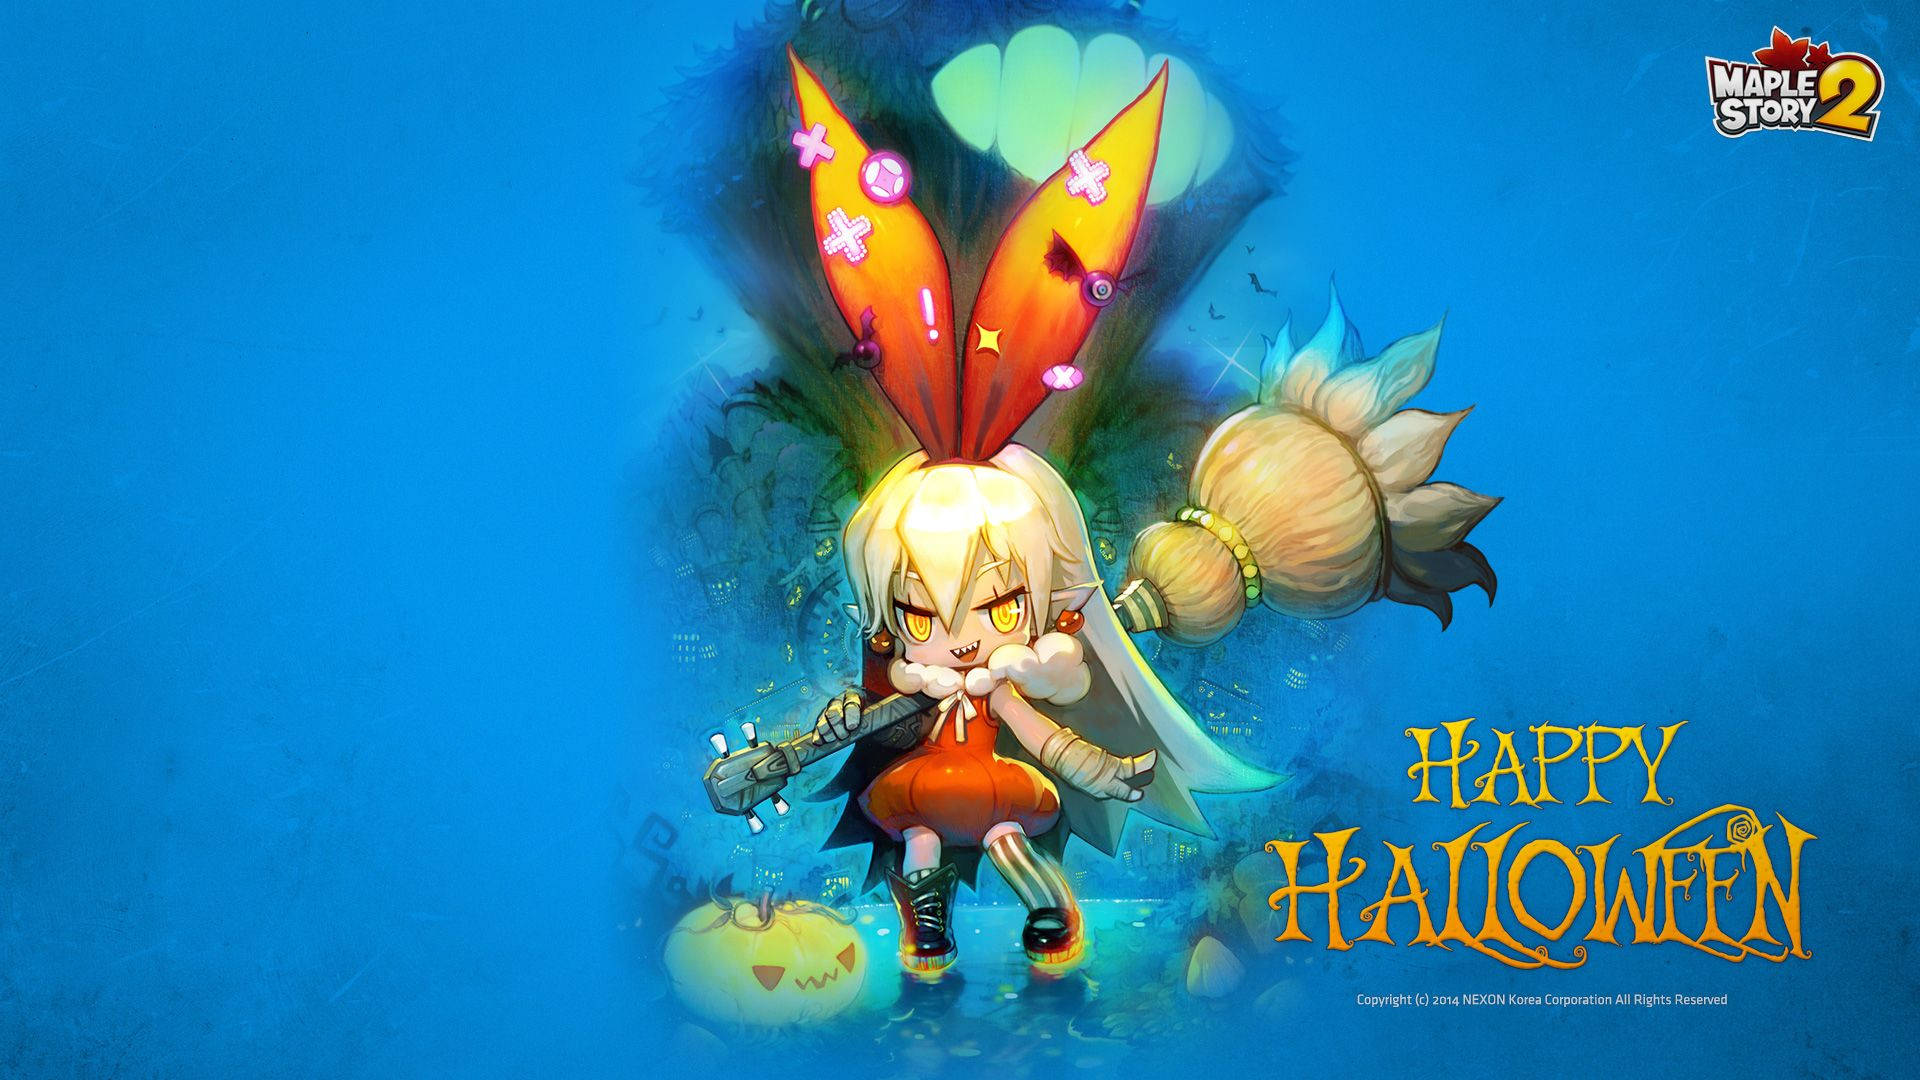 Maplestory 2 Happy Halloween Poster Wallpaper